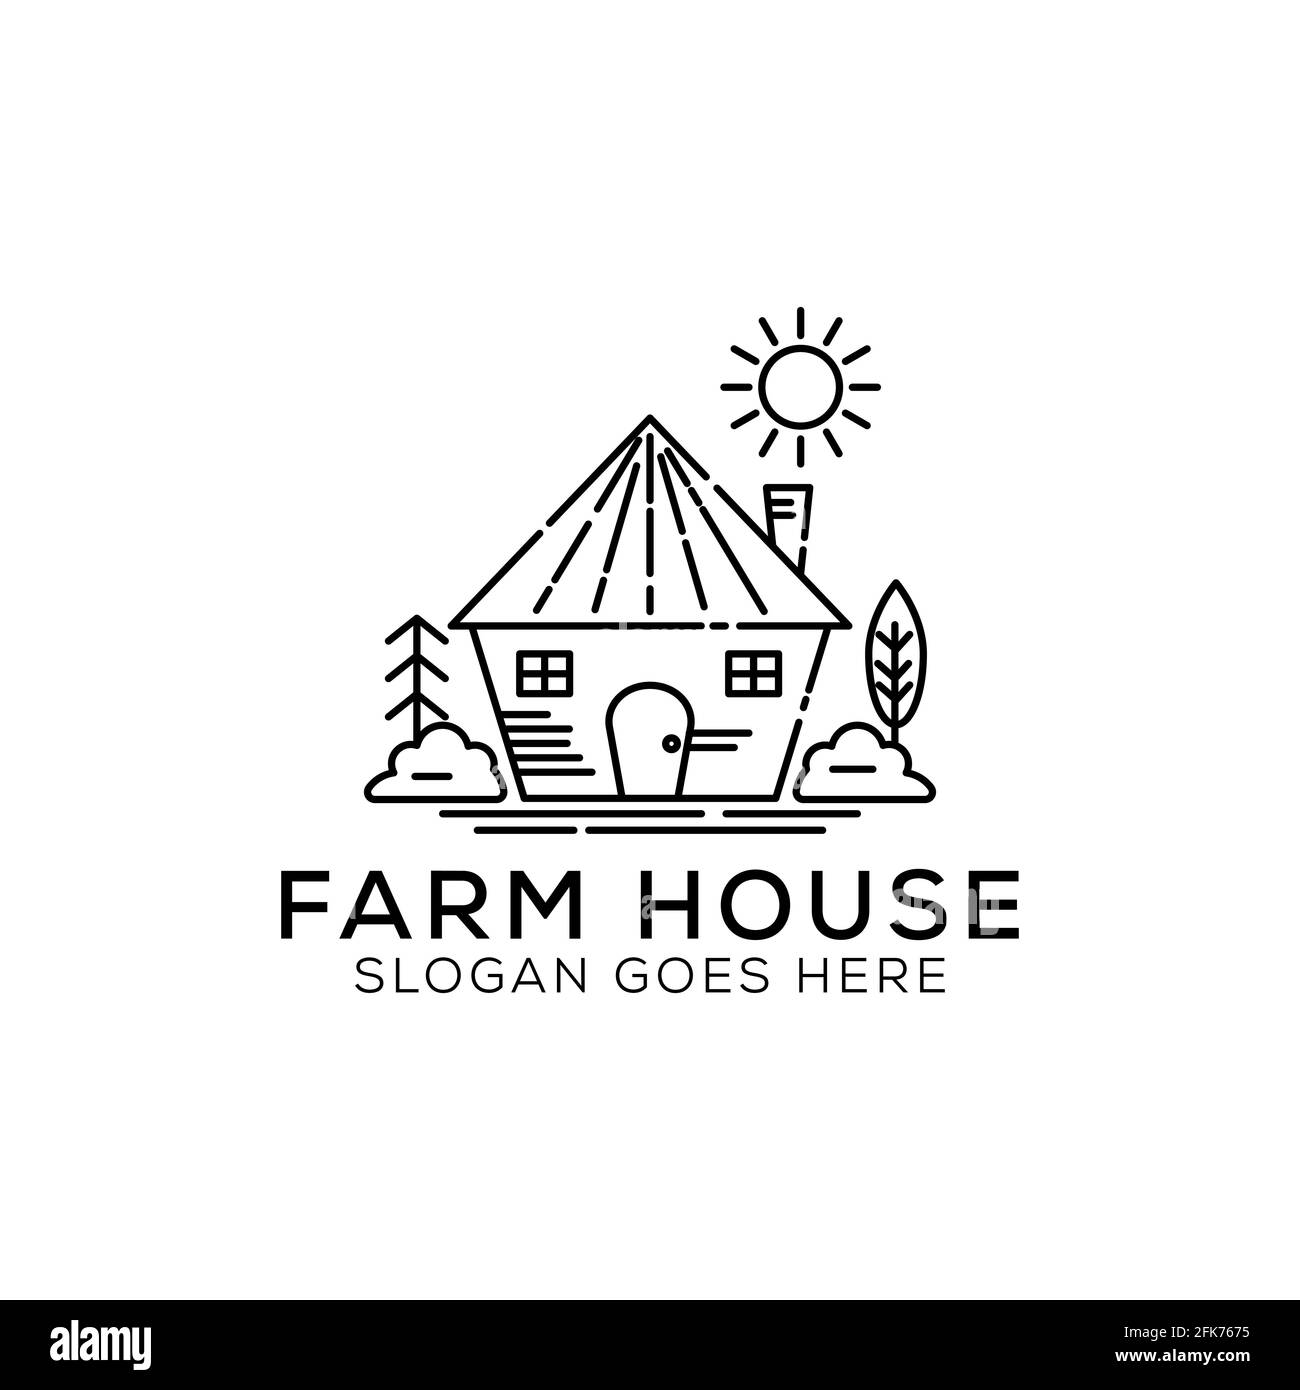 Illustrazione del design del logo Outline Farm House. Vettore paesaggistico per prodotti naturali di fattoria. Icona del logo del profilo Illustrazione vettoriale. Illustrazione Vettoriale